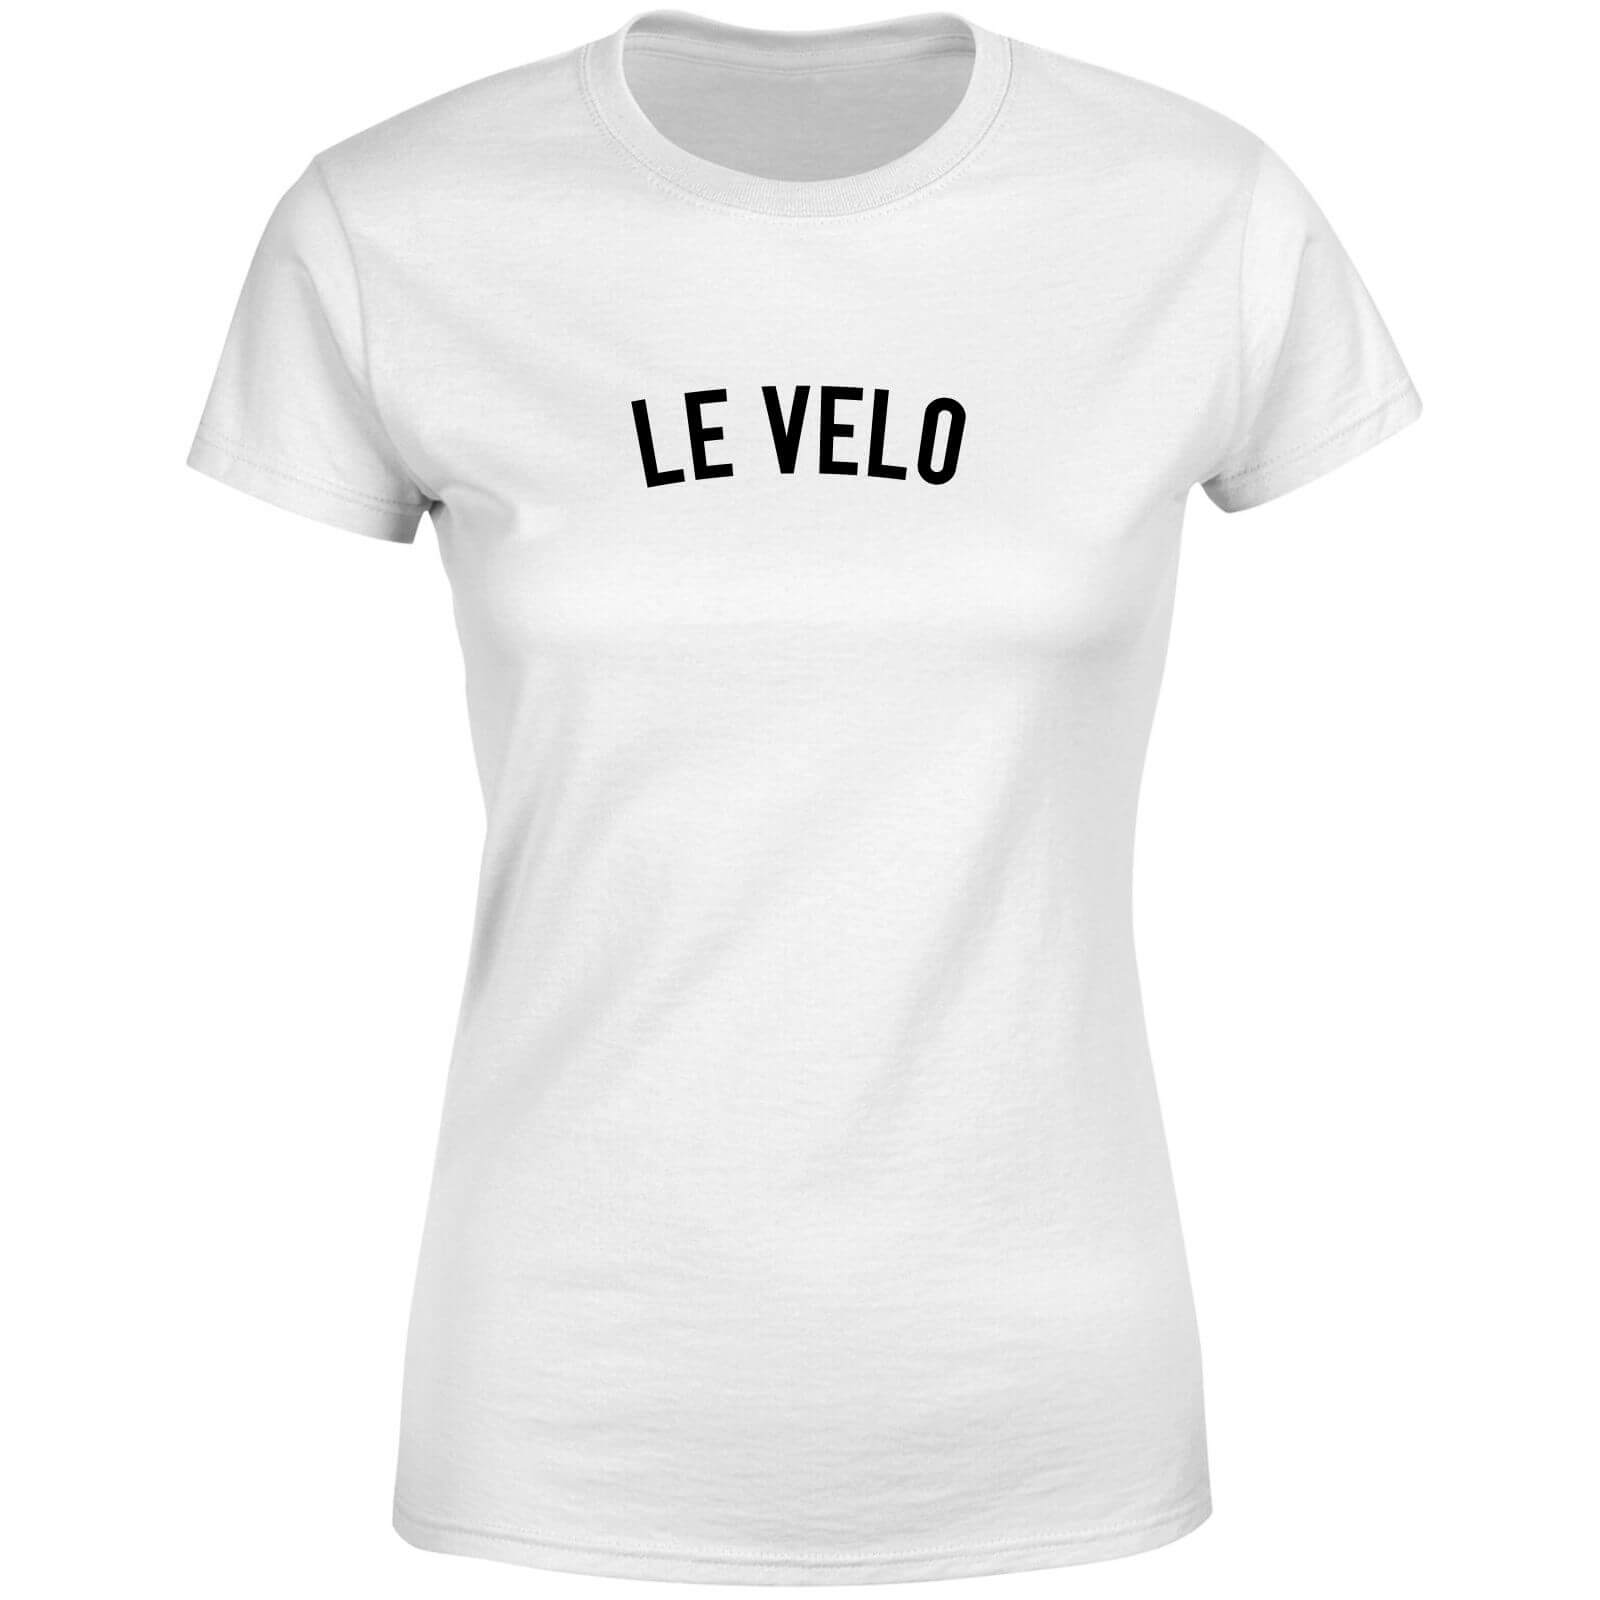 Le Velo Women's T-Shirt - White - XL - White